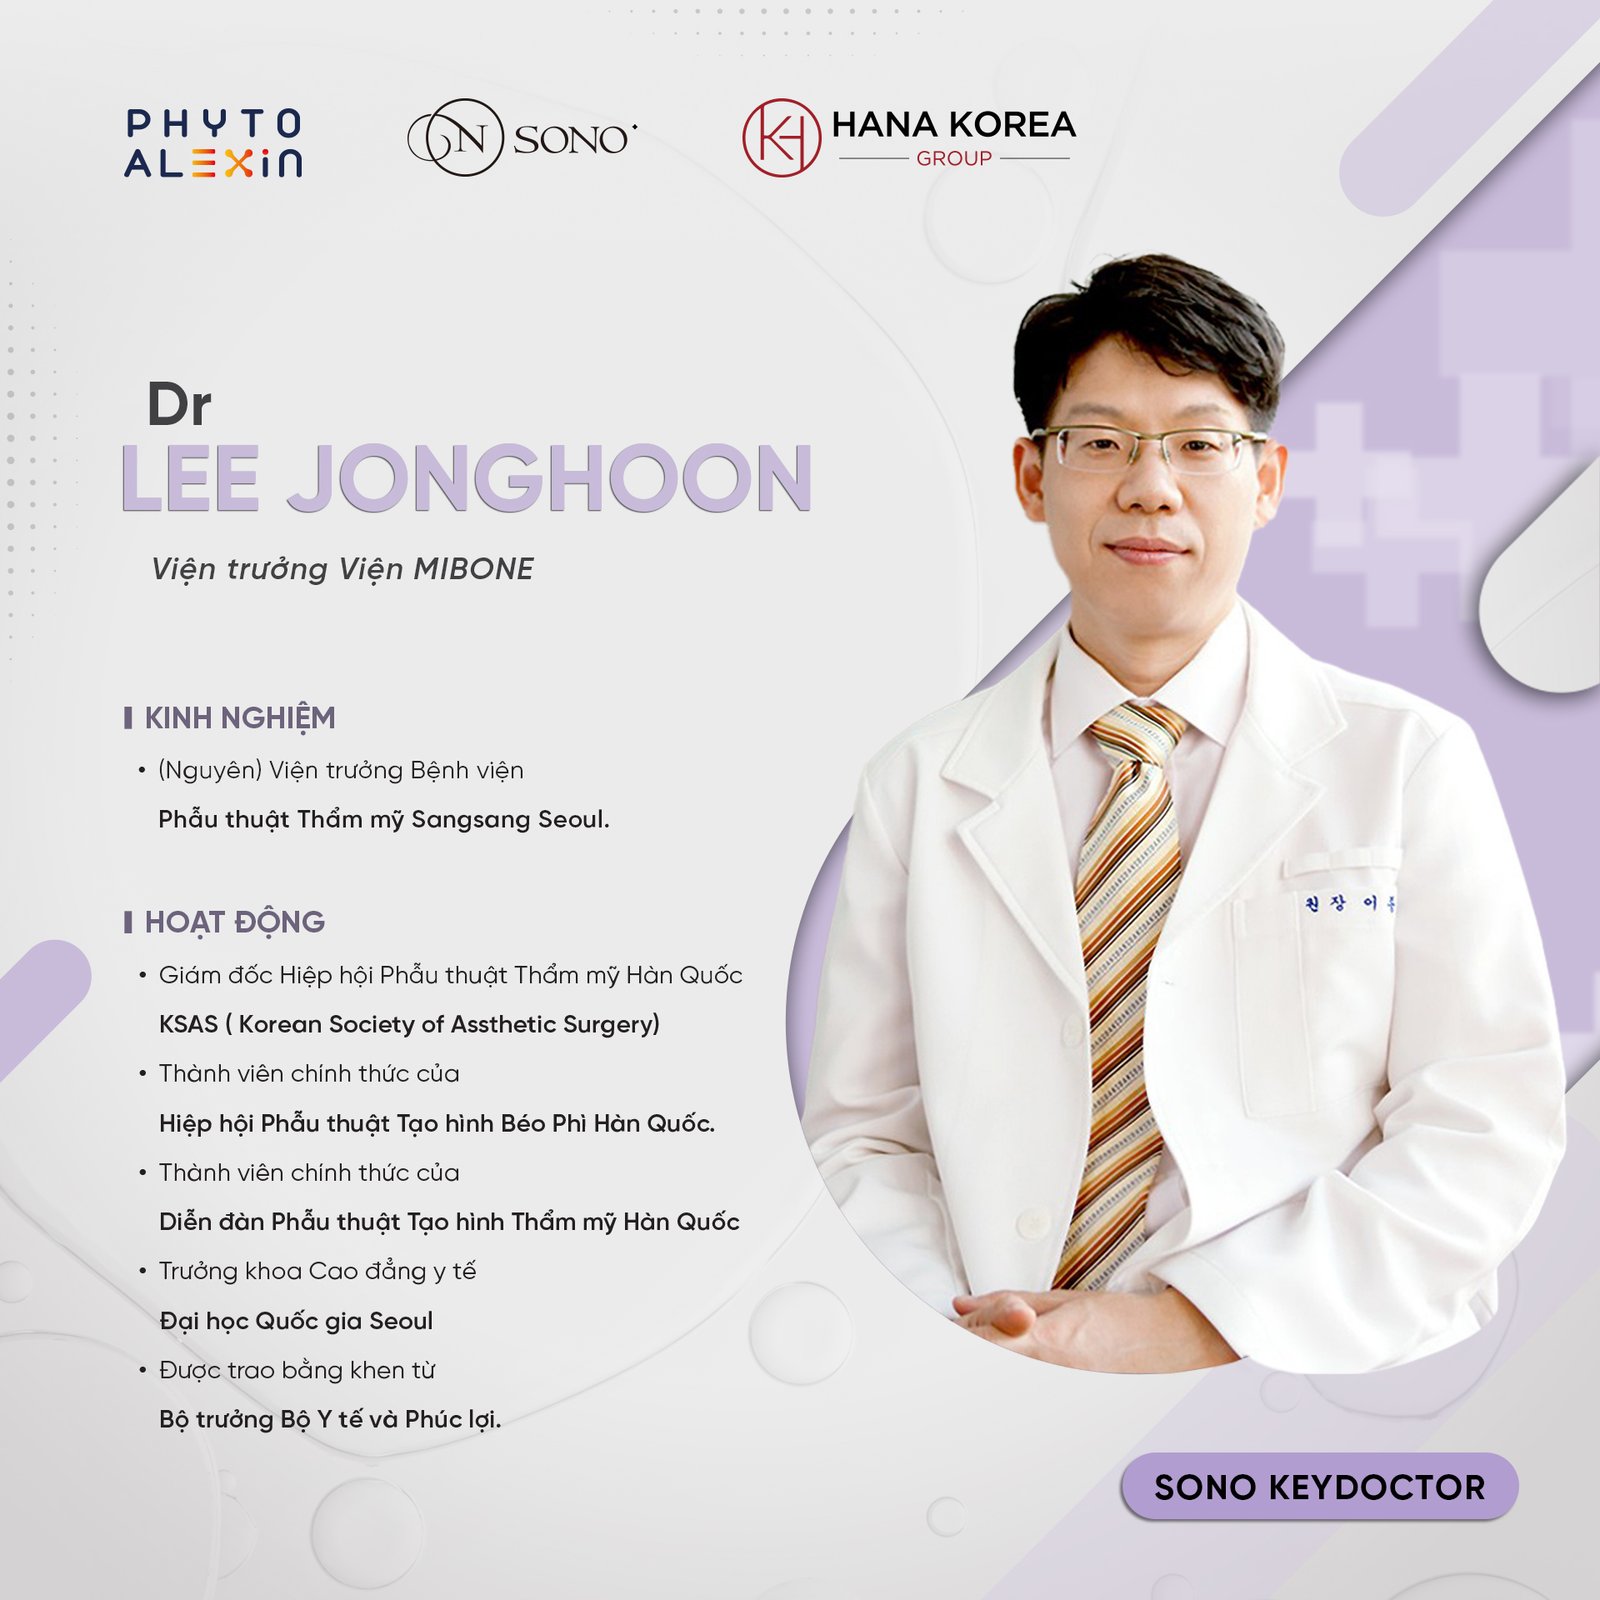 MD. Lee JongHoon